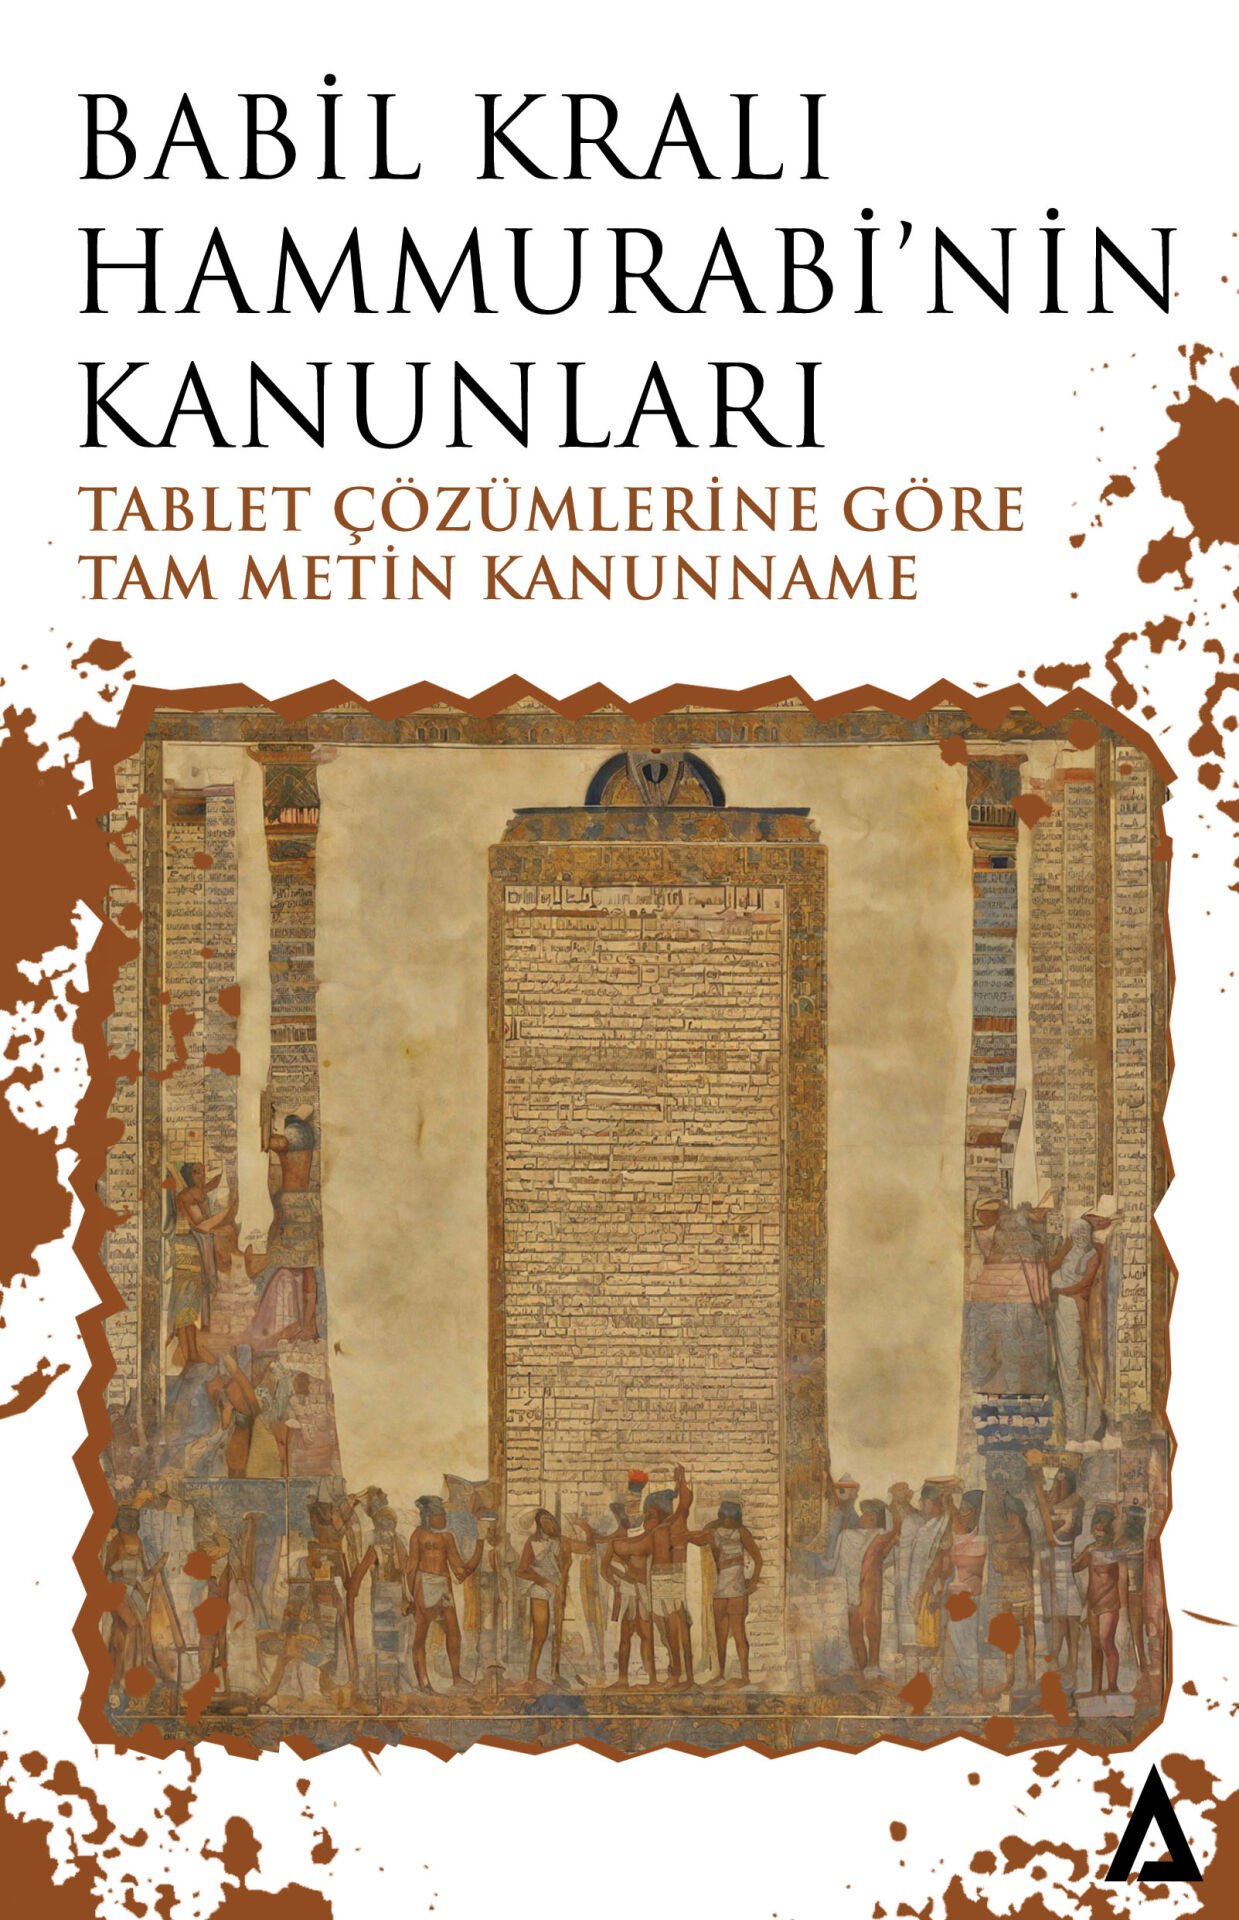 Babil Kralı Hammurrabi'nin Kanunları (Tablet Deşifreleri) -Hammurabi